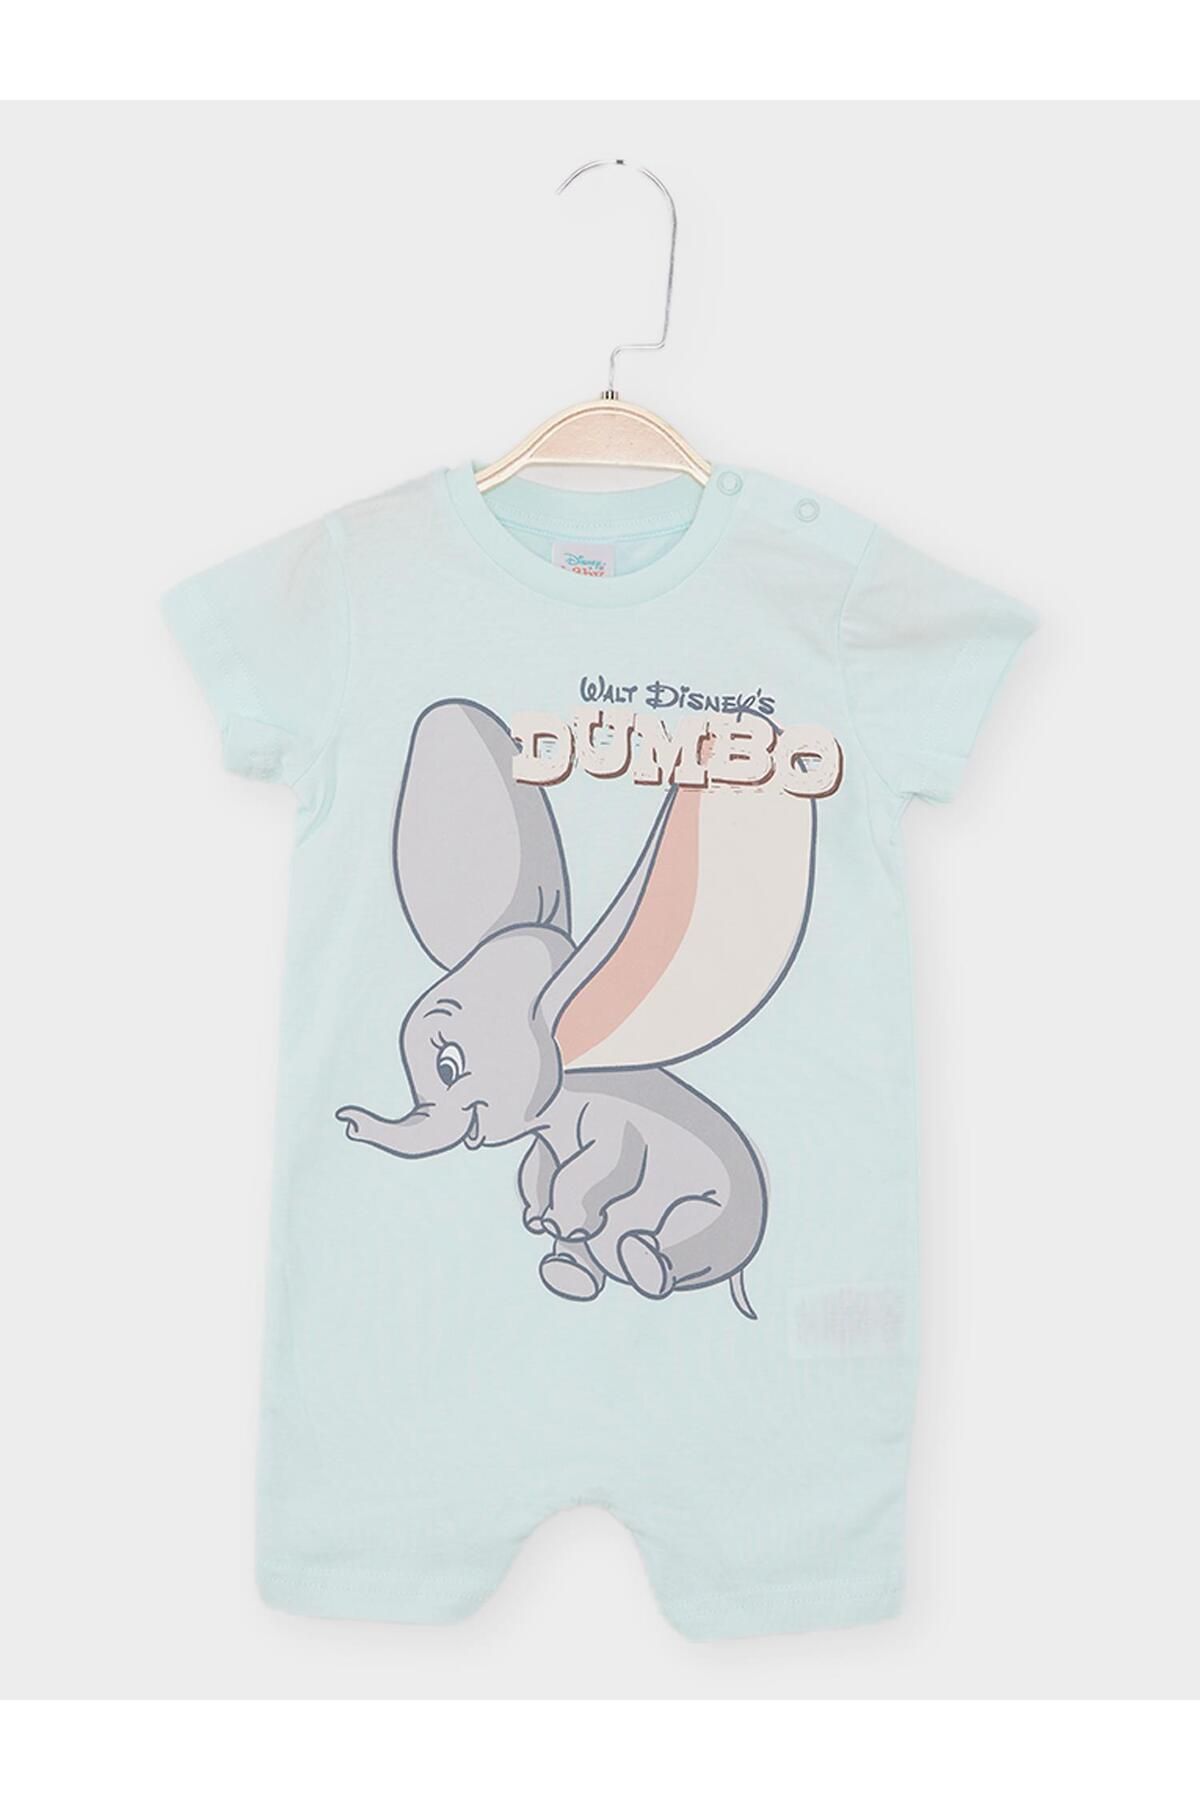 DİSNEY Dumbo Erkek Bebek Kısa Tulum 21829